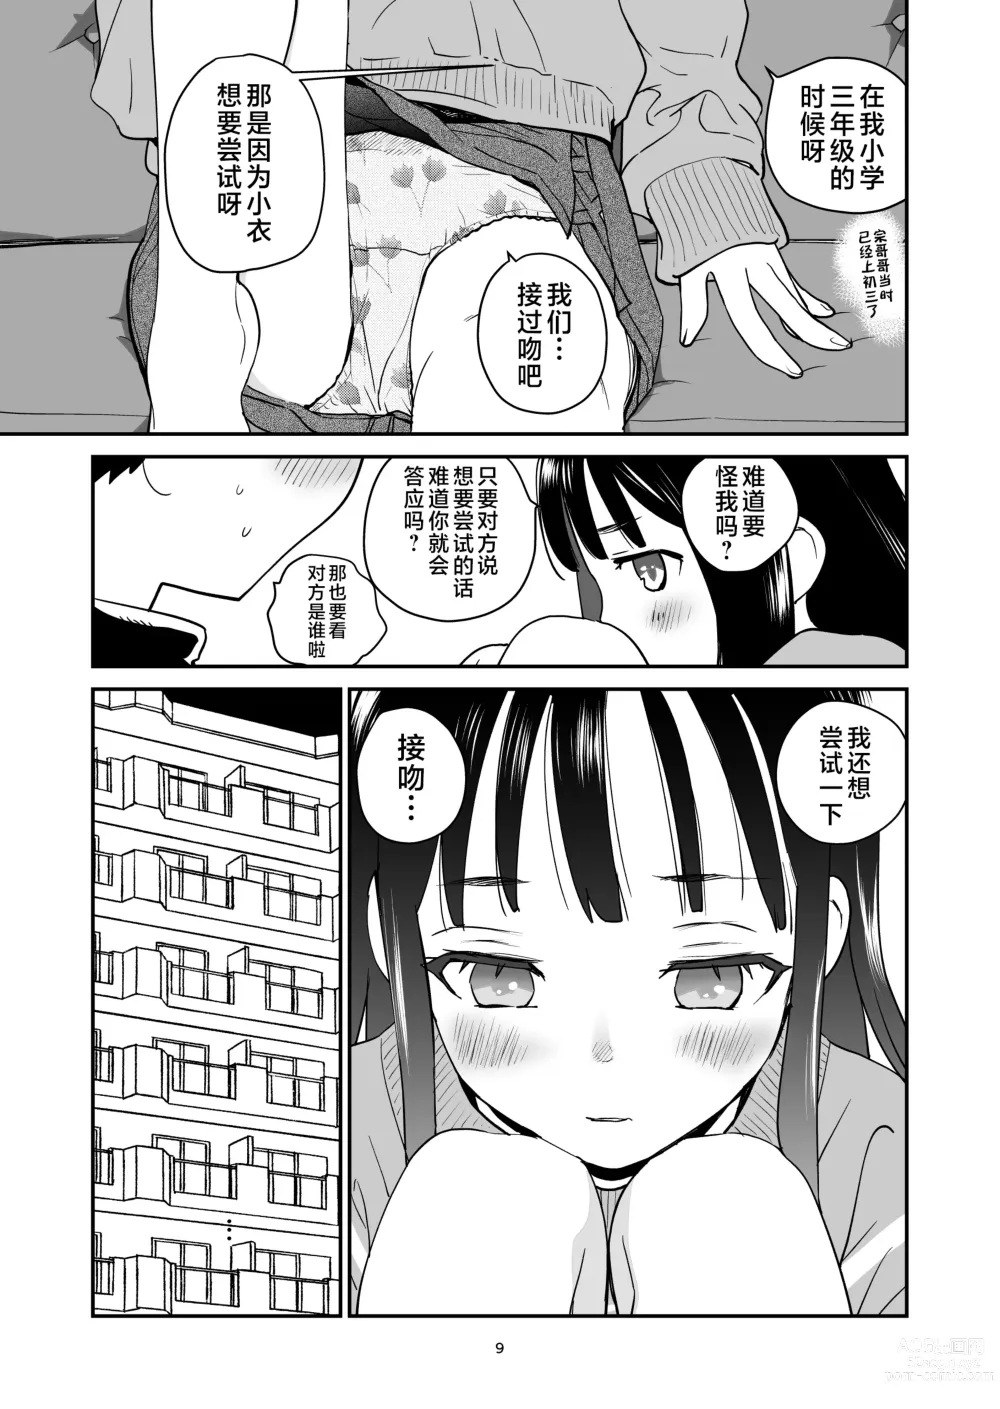 Page 9 of doujinshi ORANGE